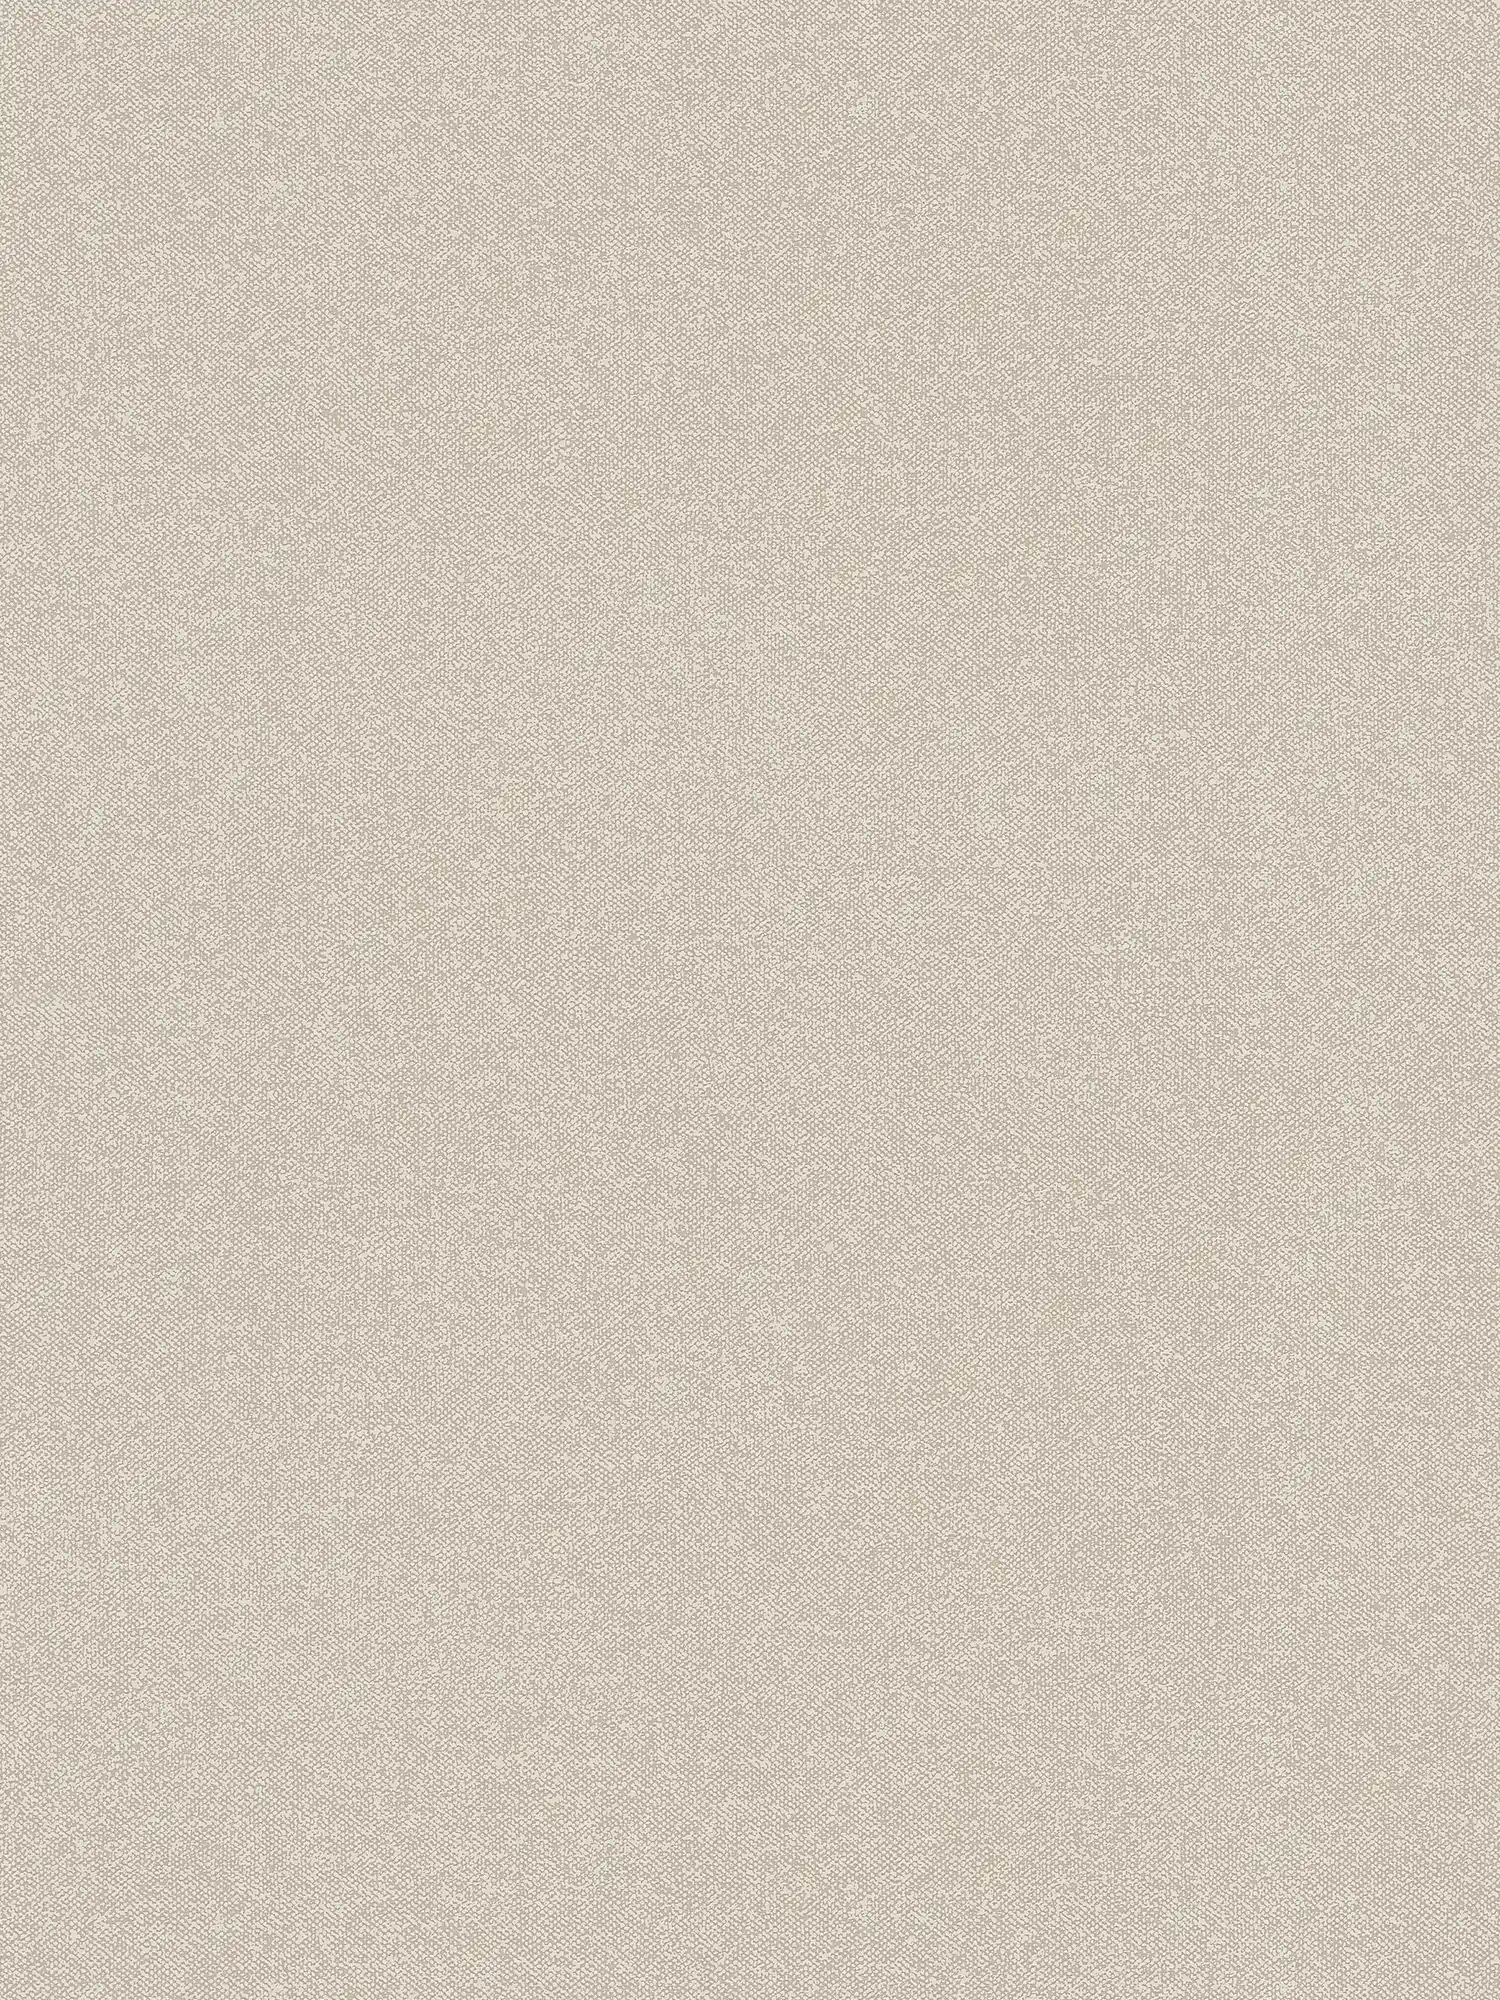 Papier peint à l'aspect textile uni - beige, crème
